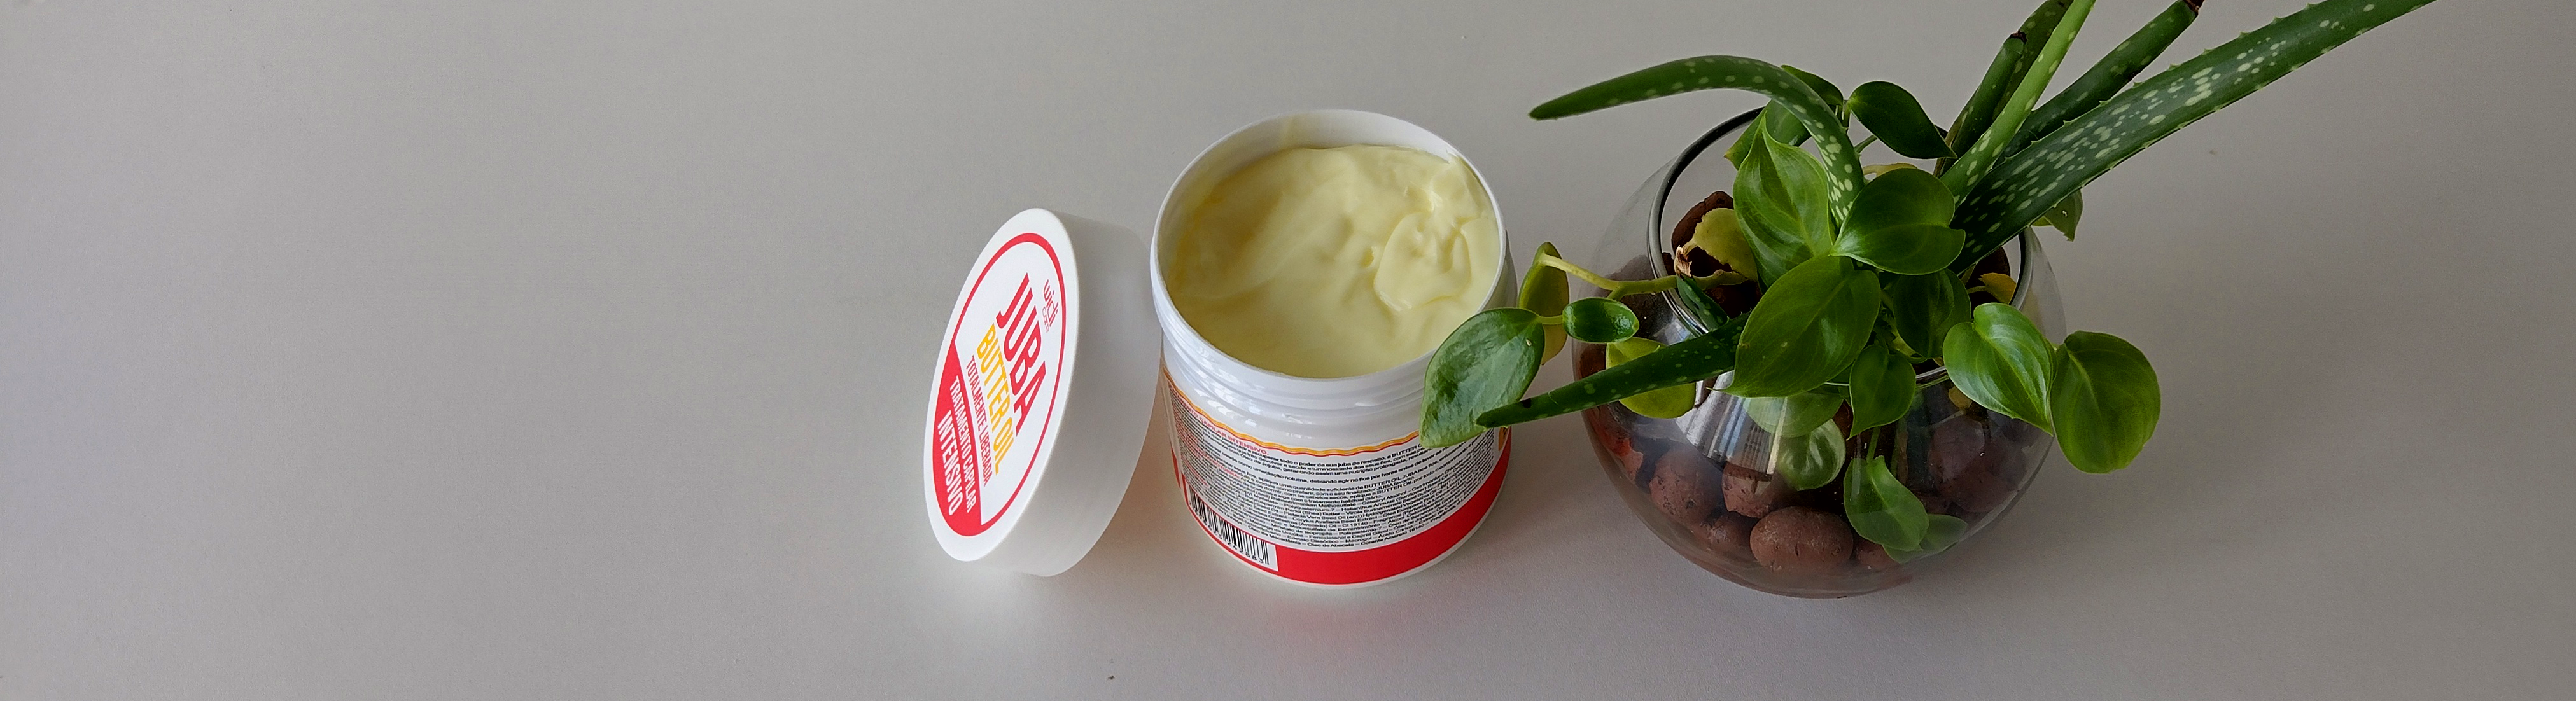 widi care máscara Butter Oil - Vegana e Liberado para Low Poo, No Poo e Co wash